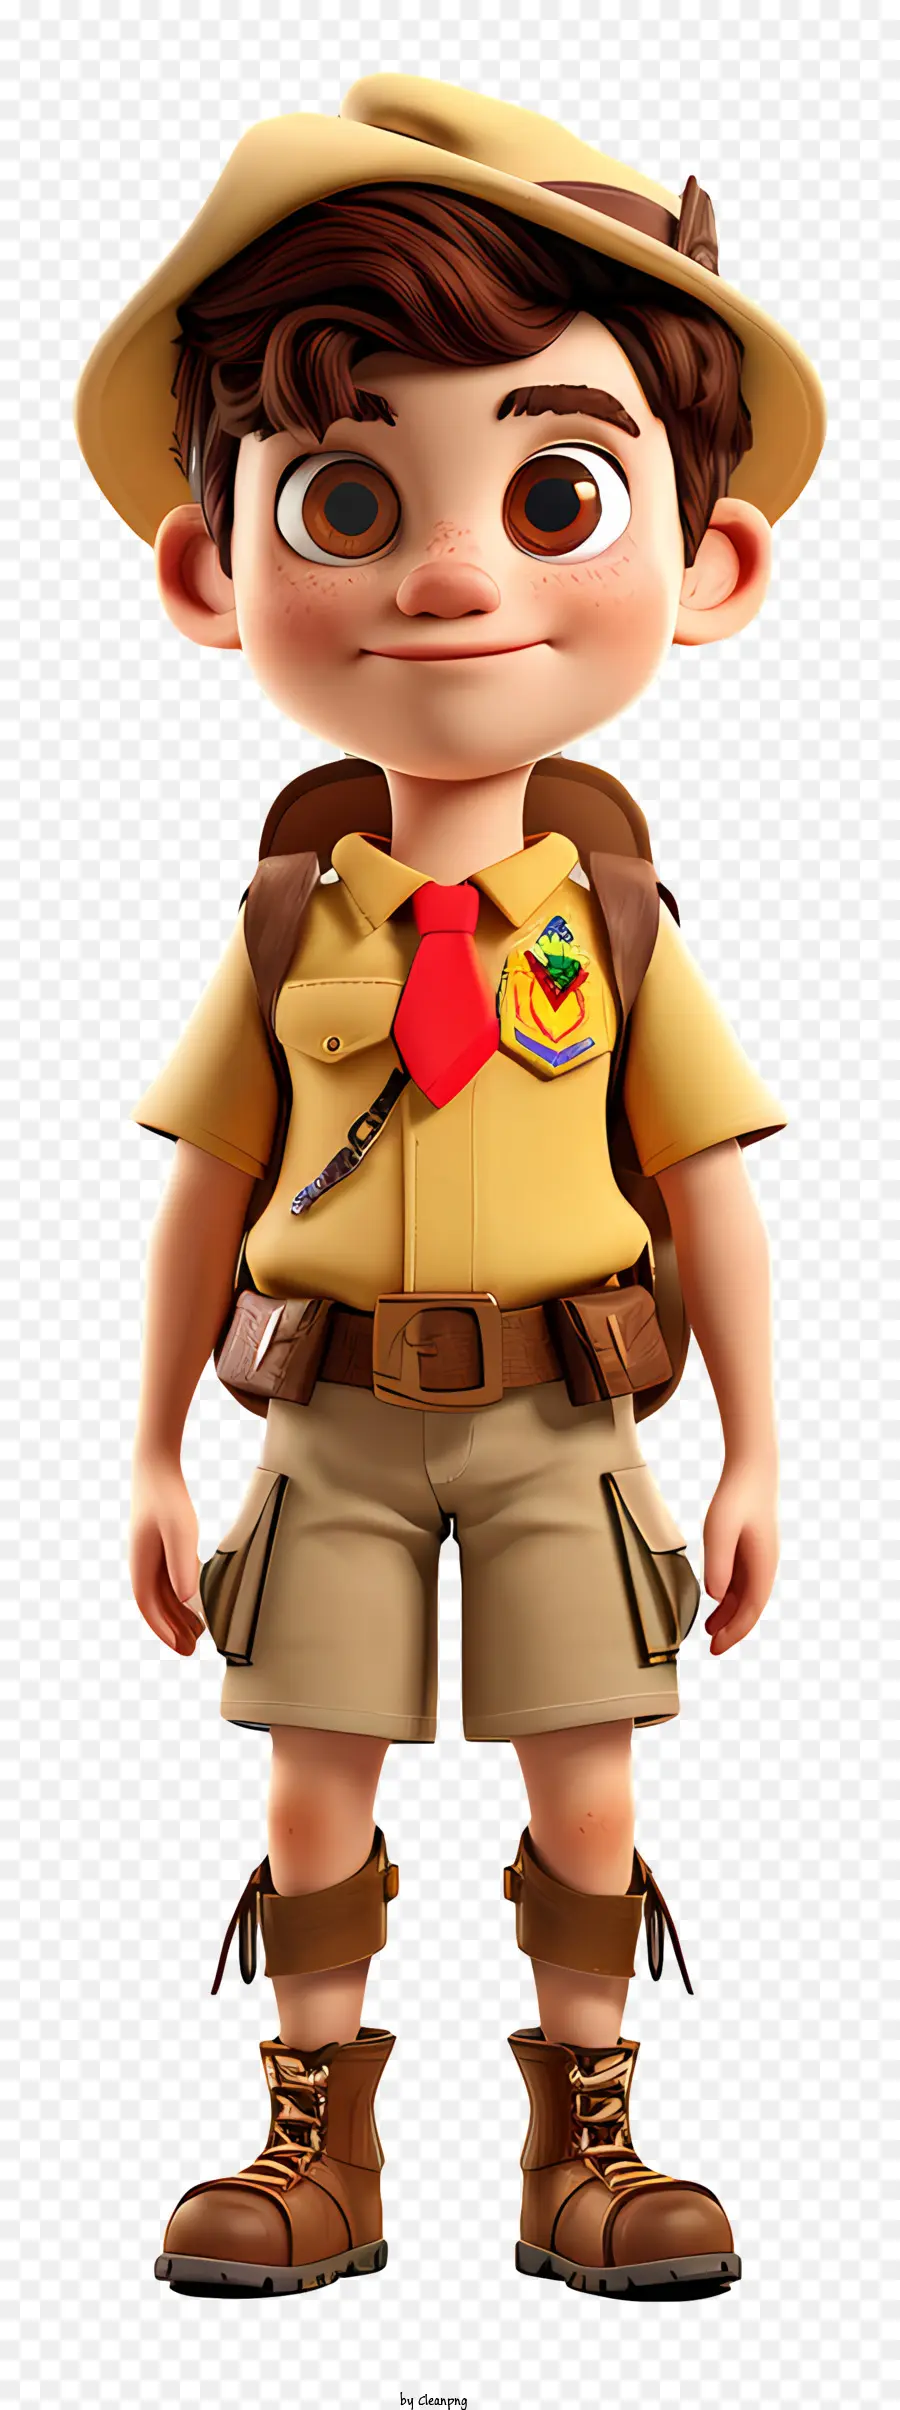 Boys Scout Boy Yellow Shorts Stivali marroni - Ragazzo sorridente con camicia gialla e cappello marrone